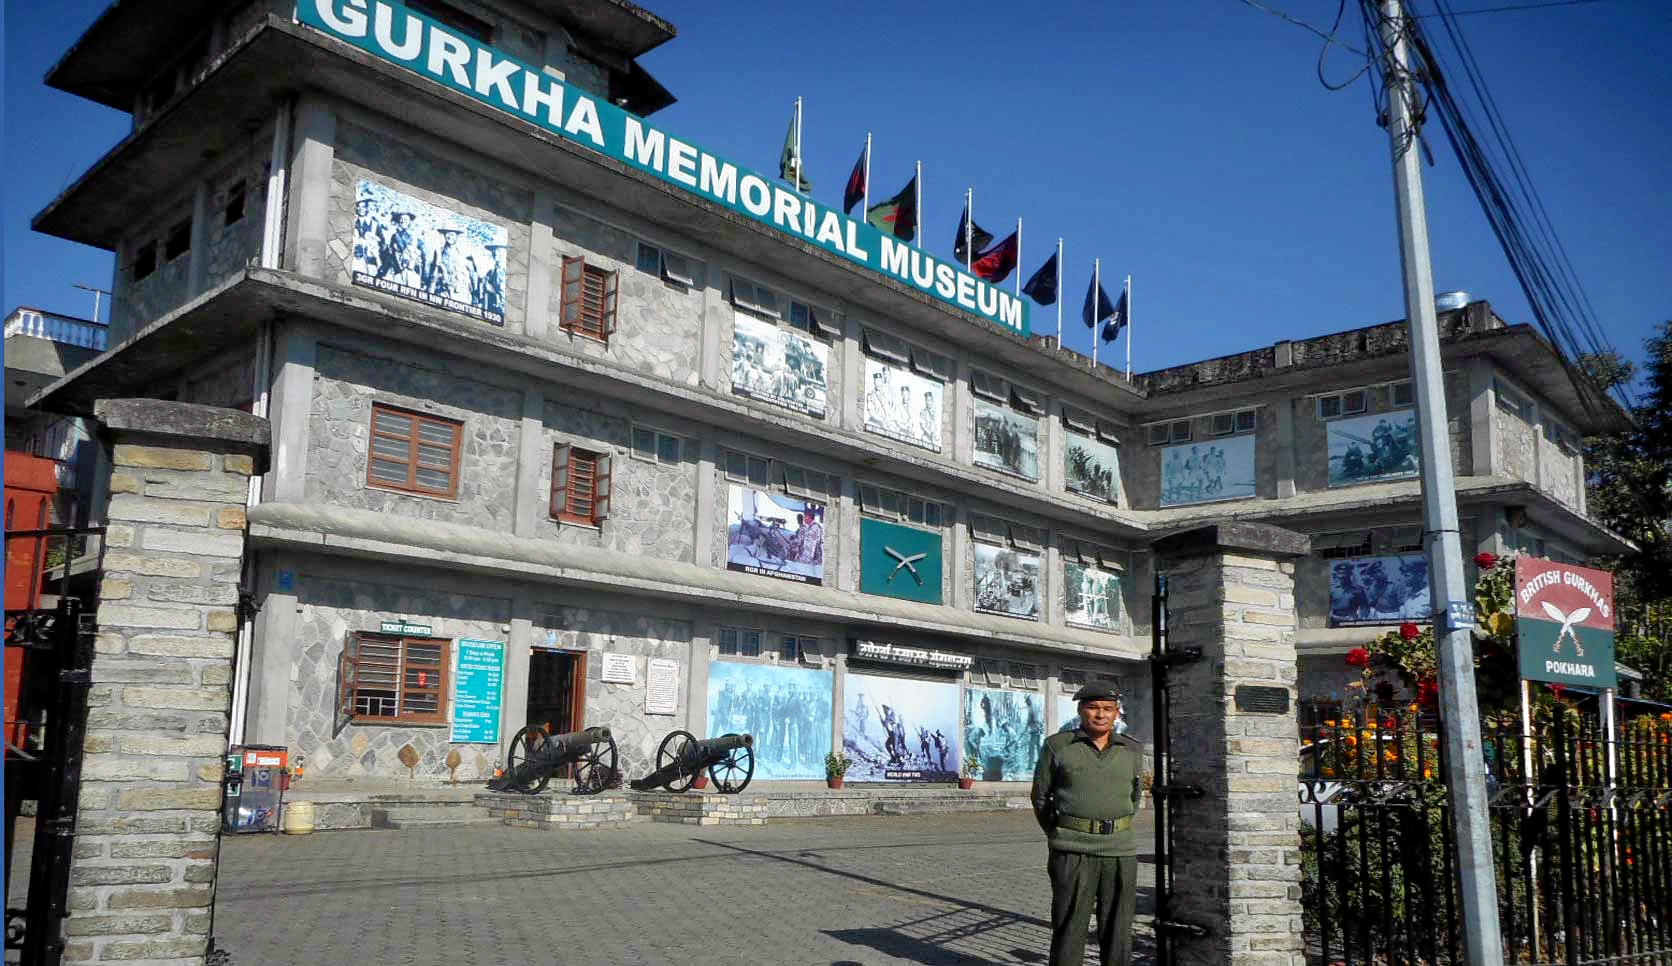 Gurkha Memorial Museum Overview